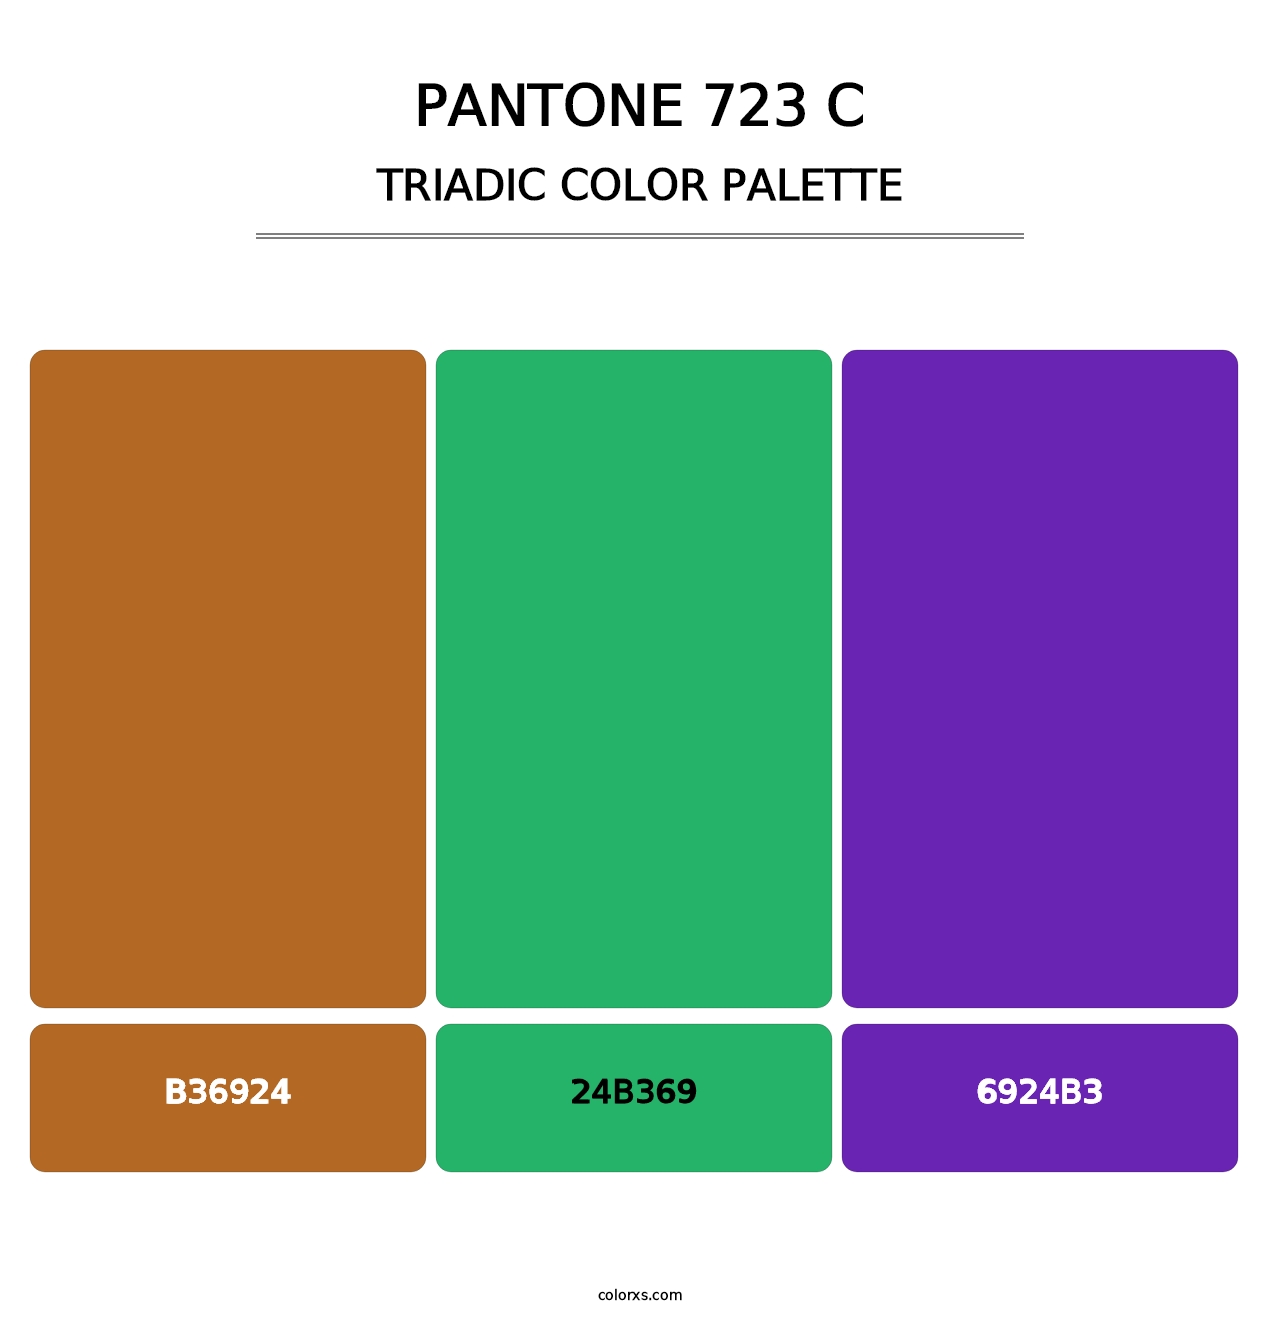 PANTONE 723 C - Triadic Color Palette